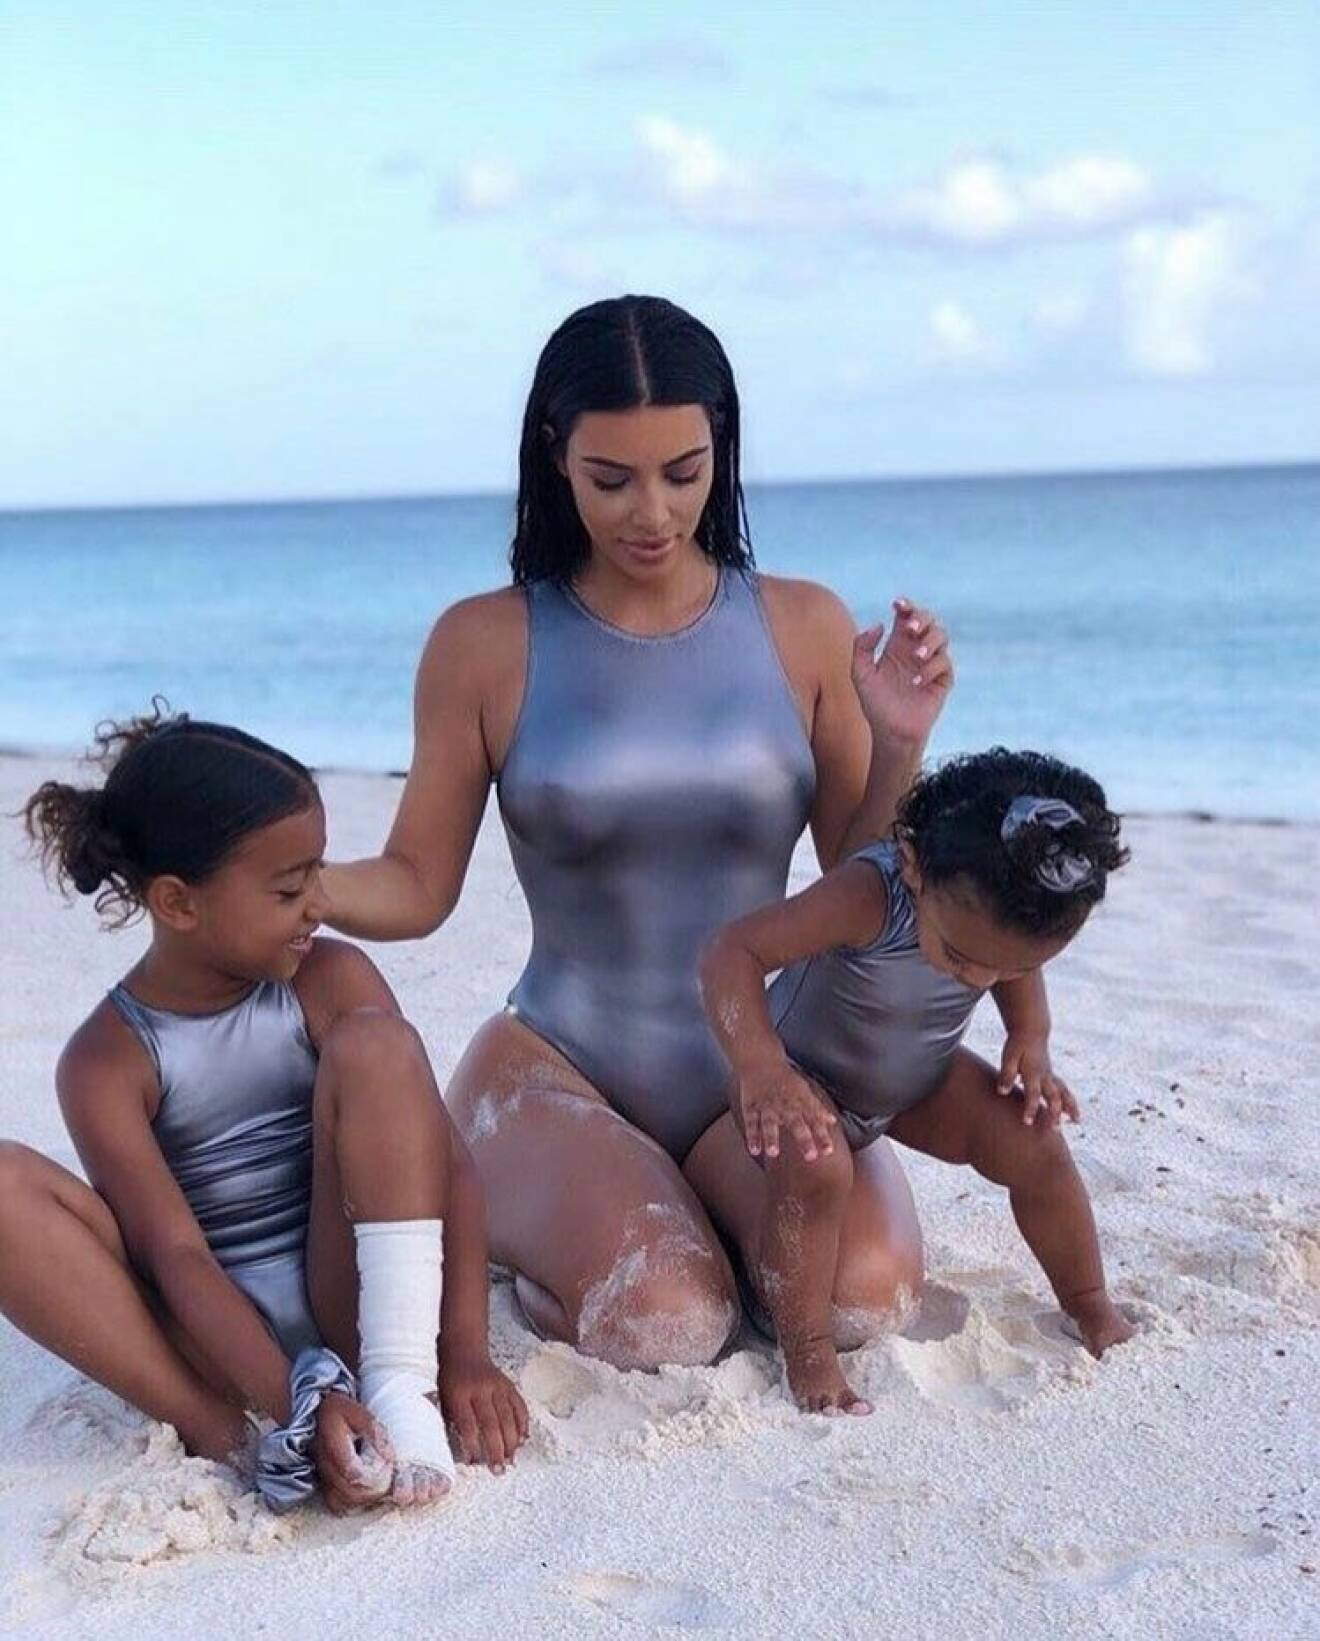 Kim Kardashian matchar döttrarna i silverfärgade baddräkter på stranden.